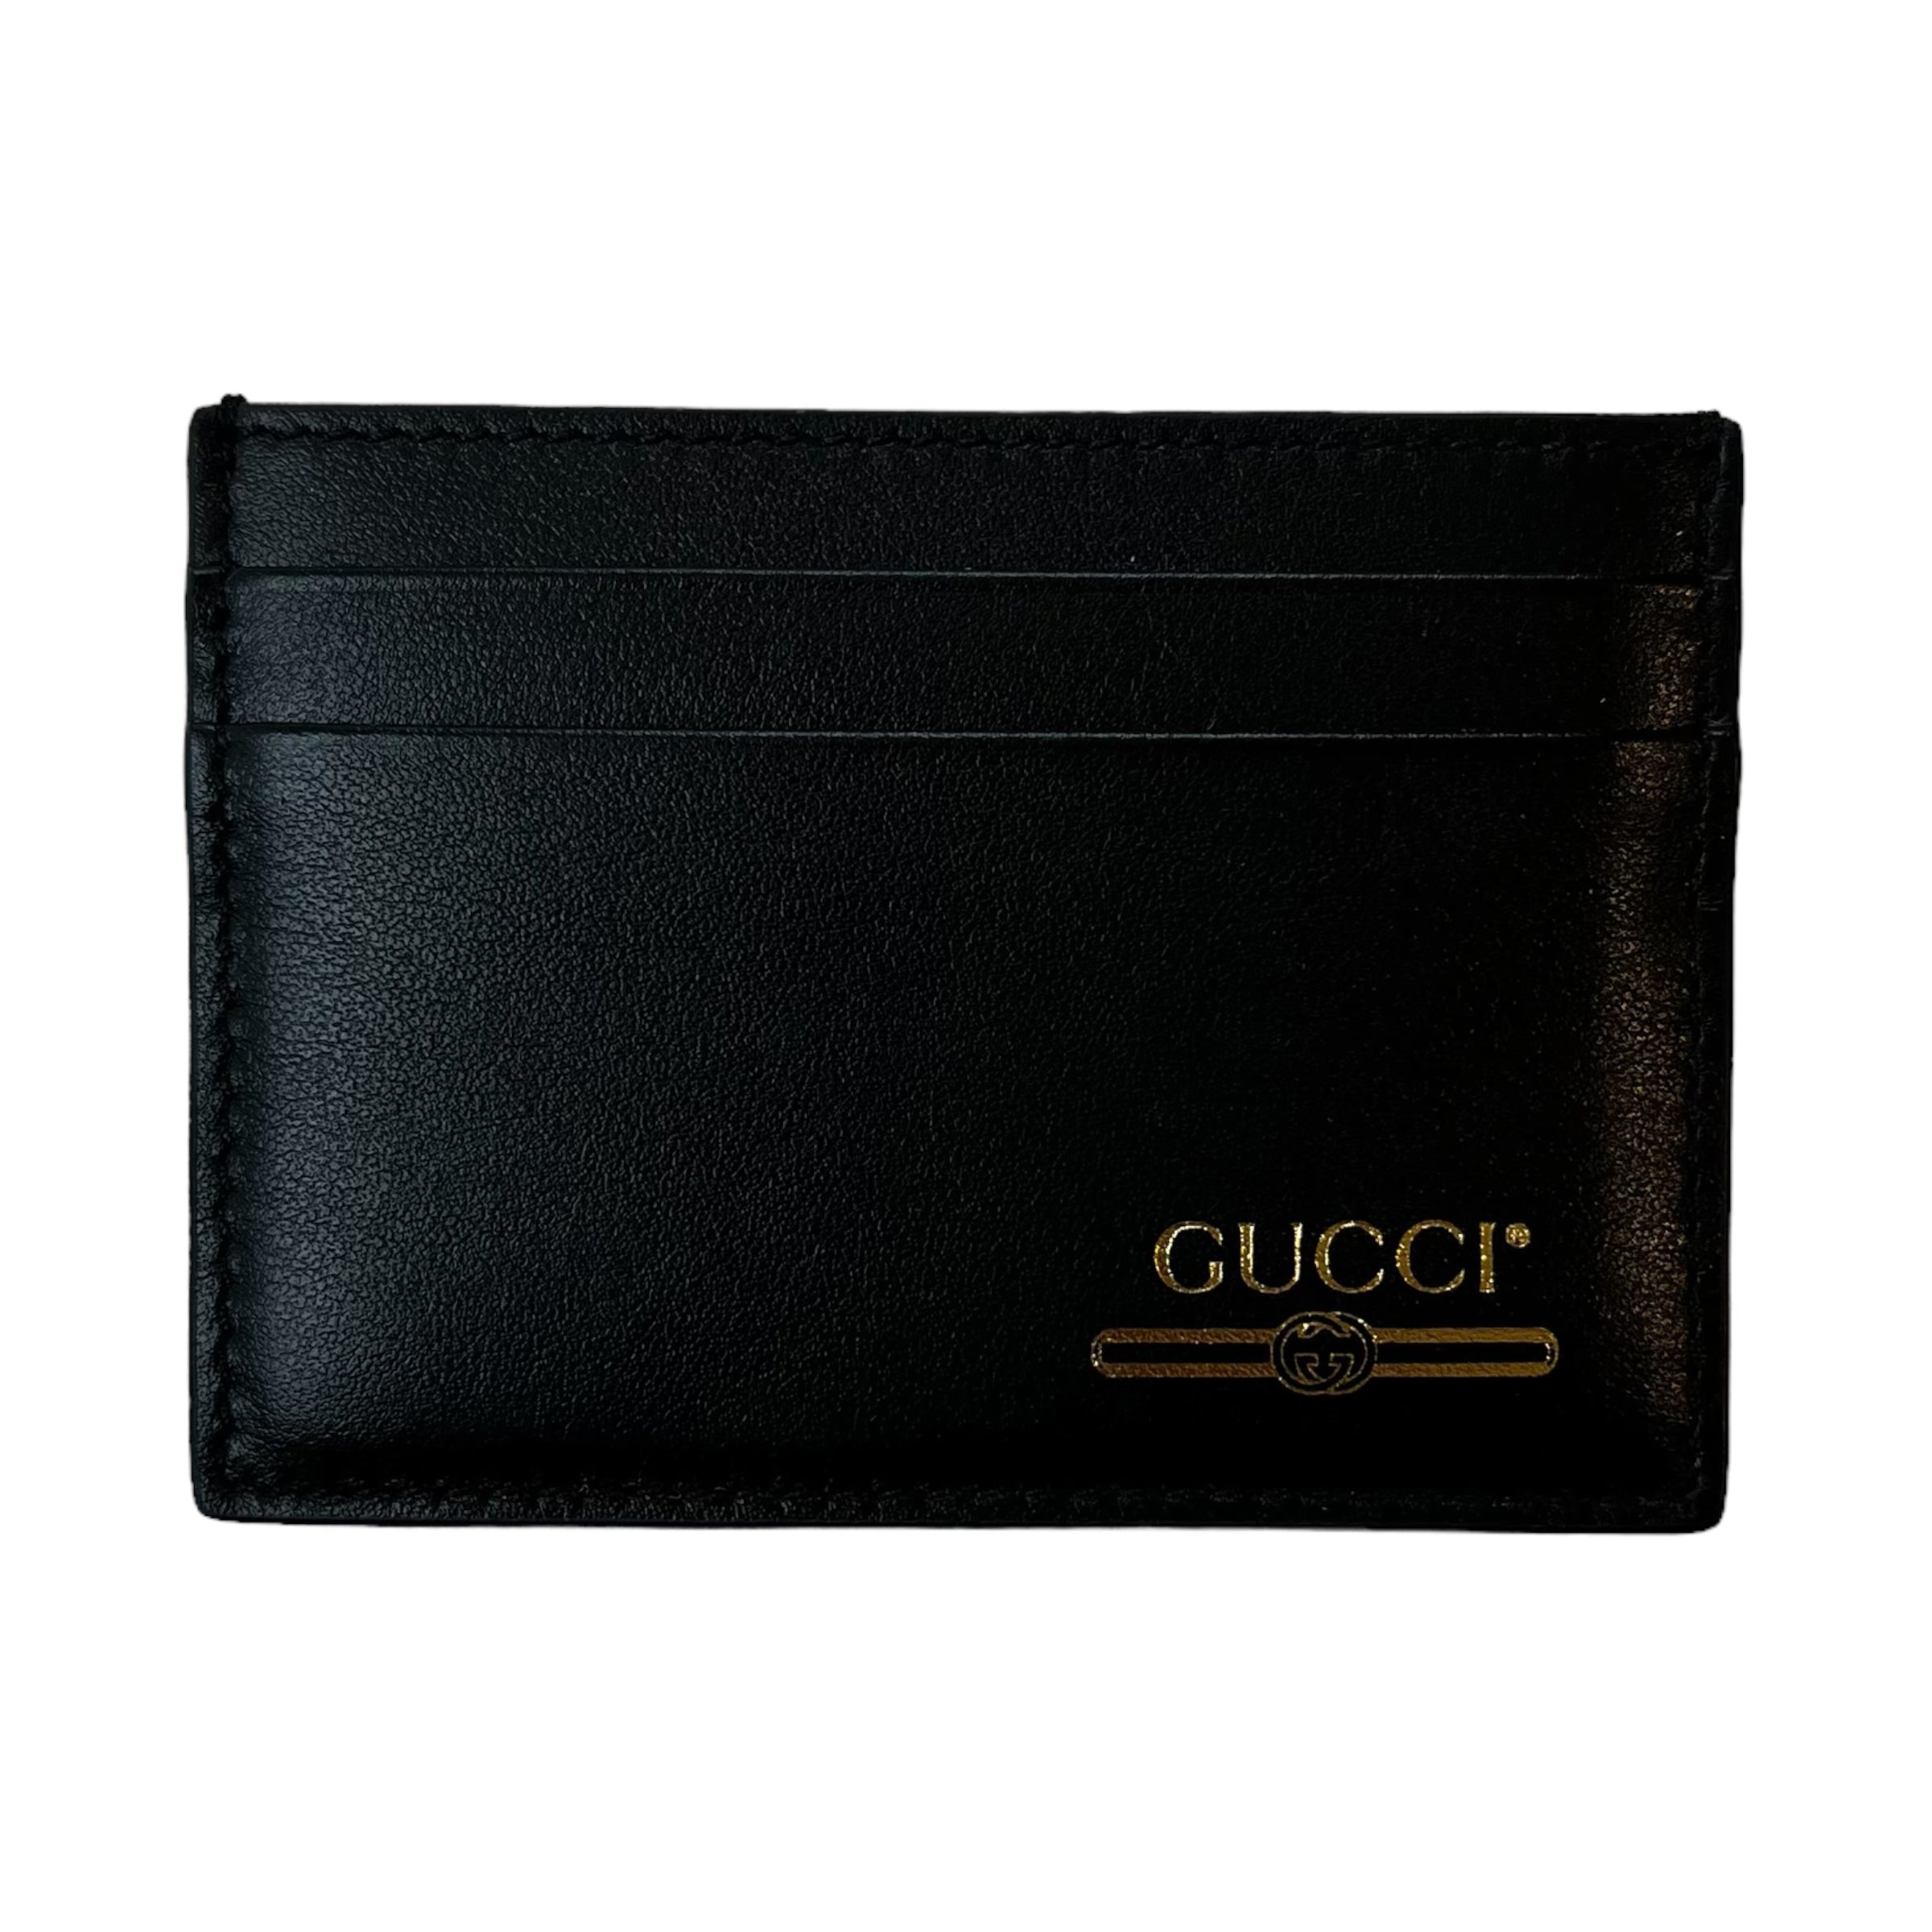 Gucci Card Holder Gold Logo